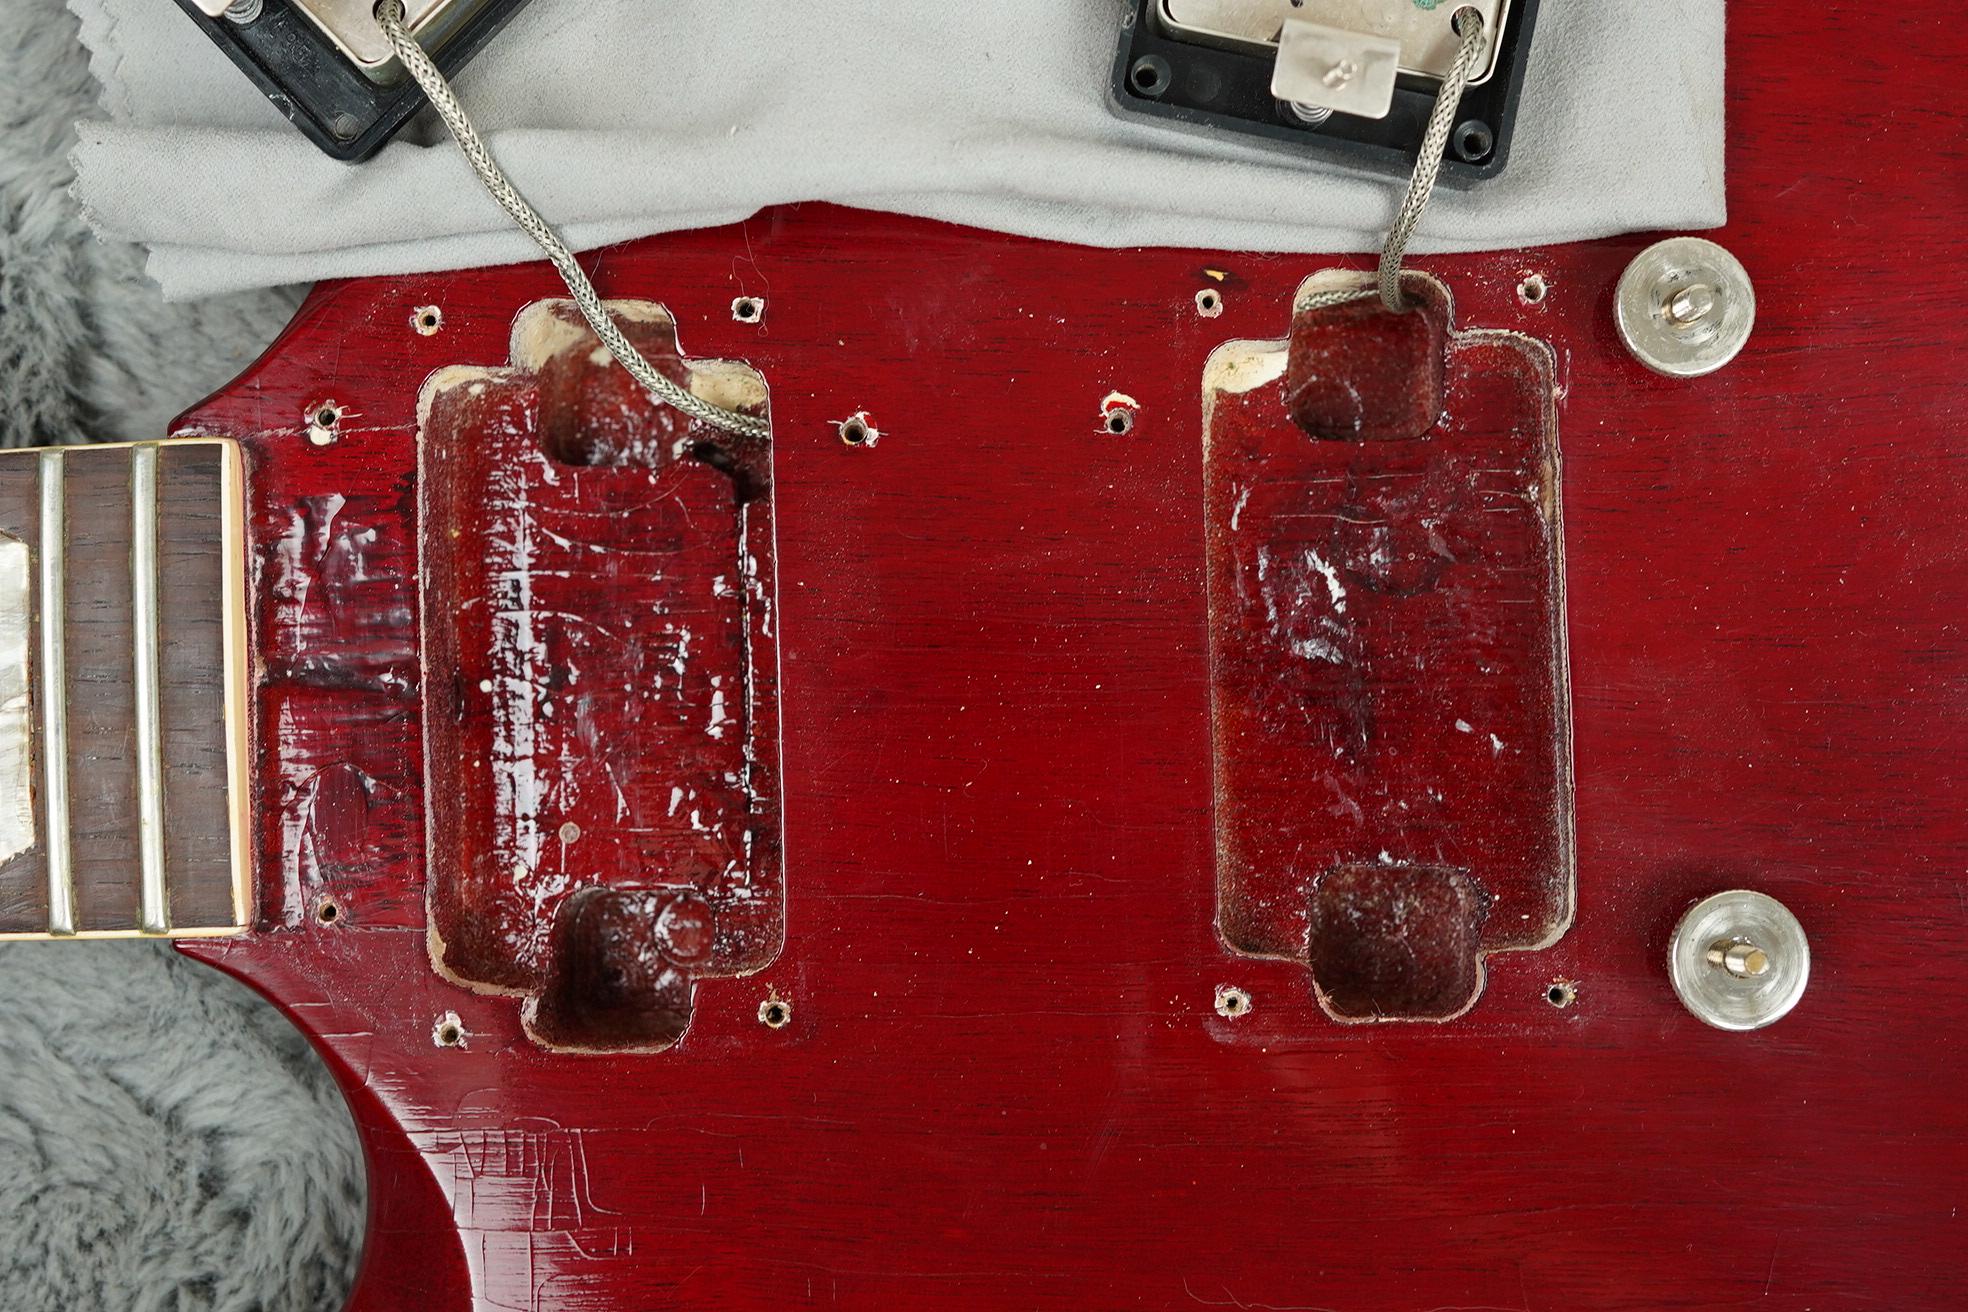 1964 Gibson SG Standard Players Grade